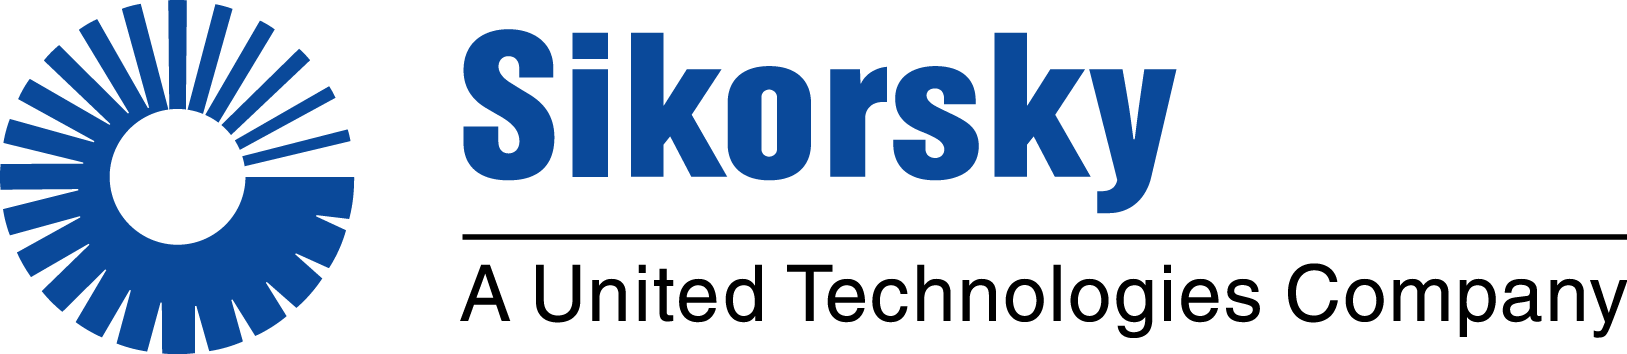 Sikorsky Brand Logo